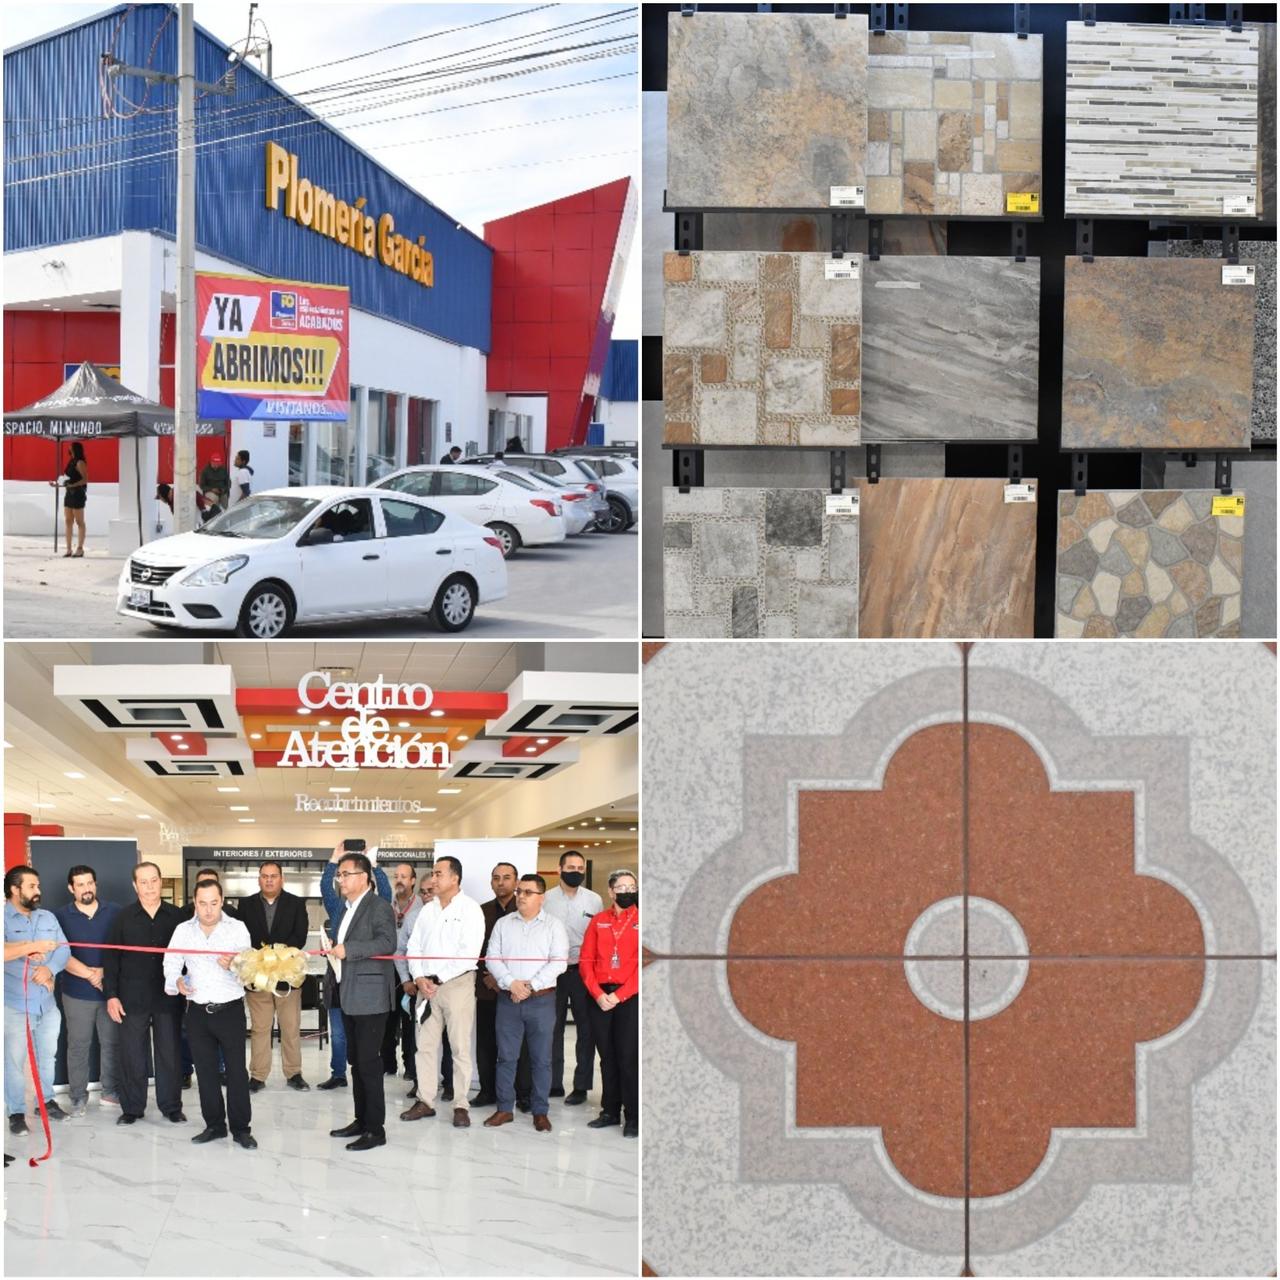 Con más de 70 años en el mercado y más de 20 tiendas ubicadas en Nuevo León y Coahuila, Plomería García. (ADÁN RAMOS)